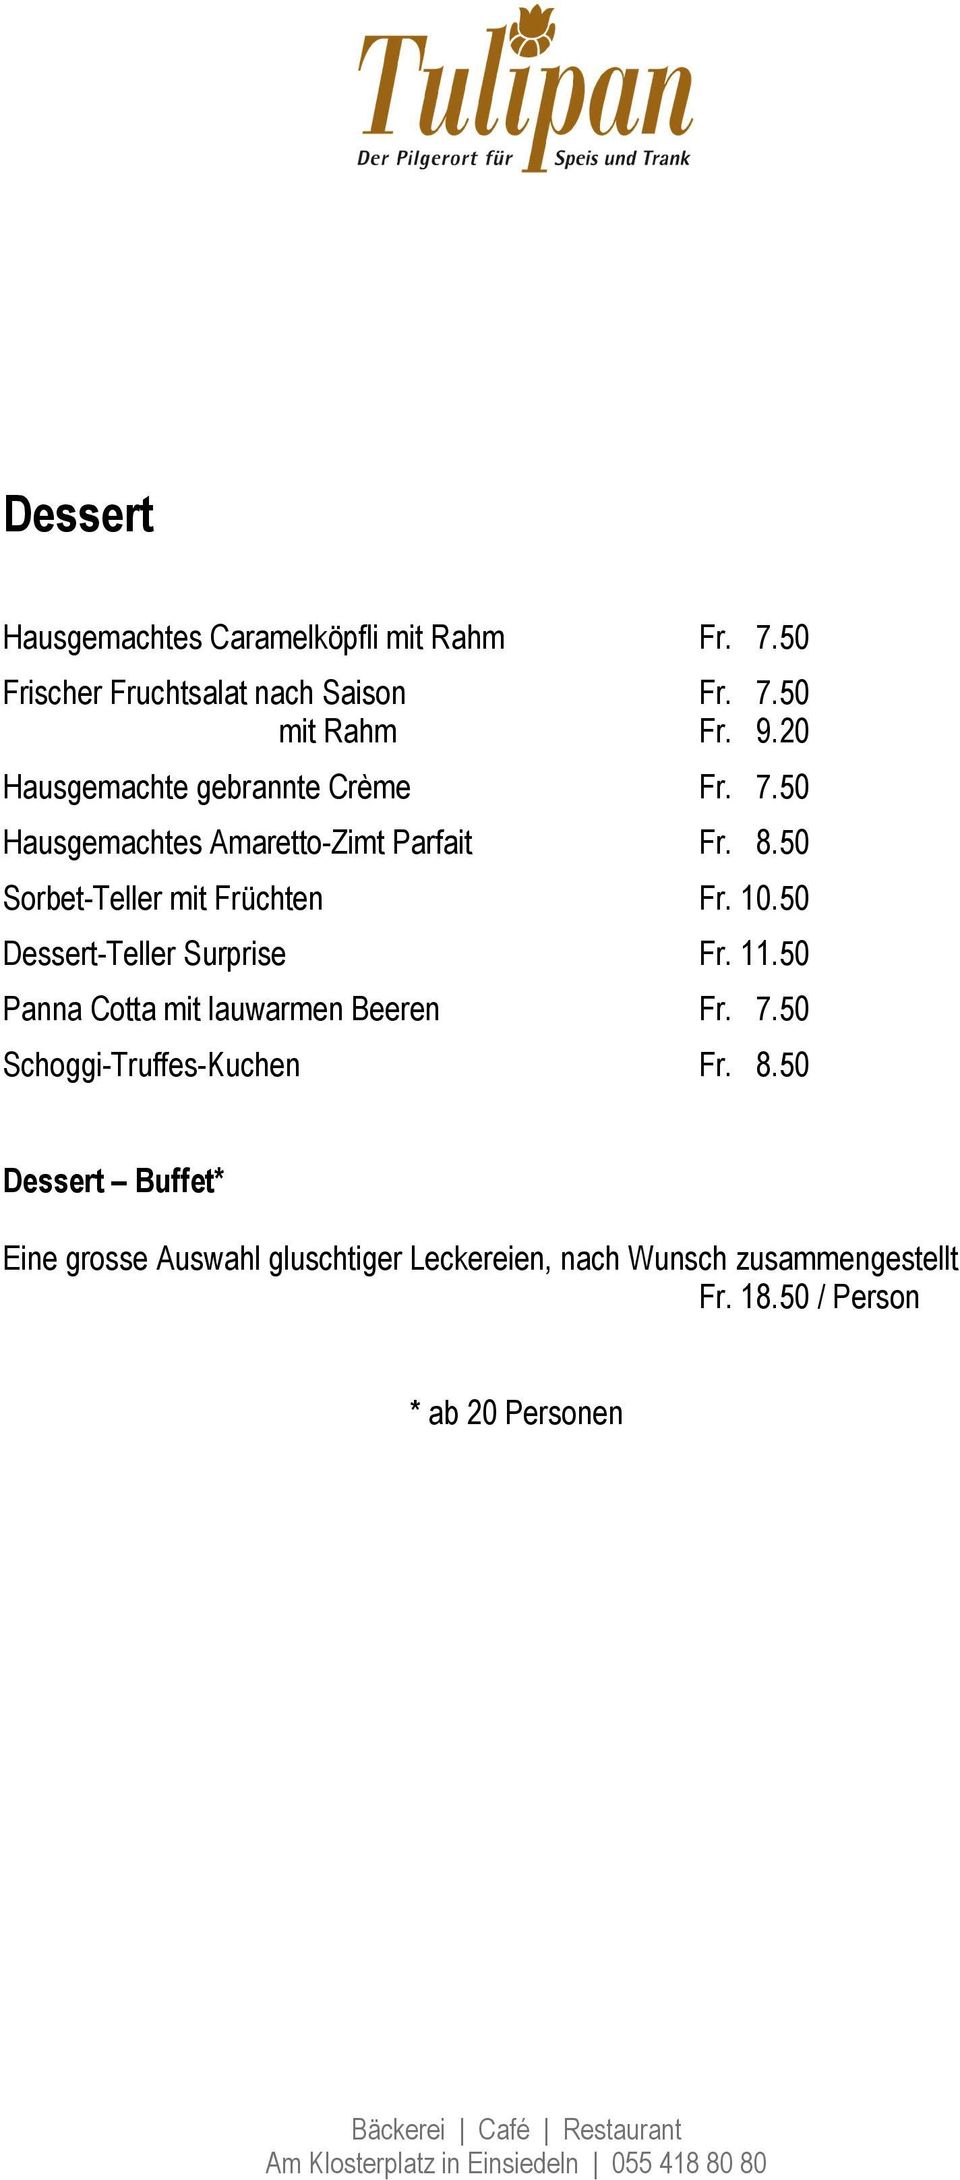 10.50 Dessert-Teller Surprise Fr. 11.50 Panna Cotta mit lauwarmen Beeren Fr. 7.50 Schoggi-Truffes-Kuchen Fr. 8.